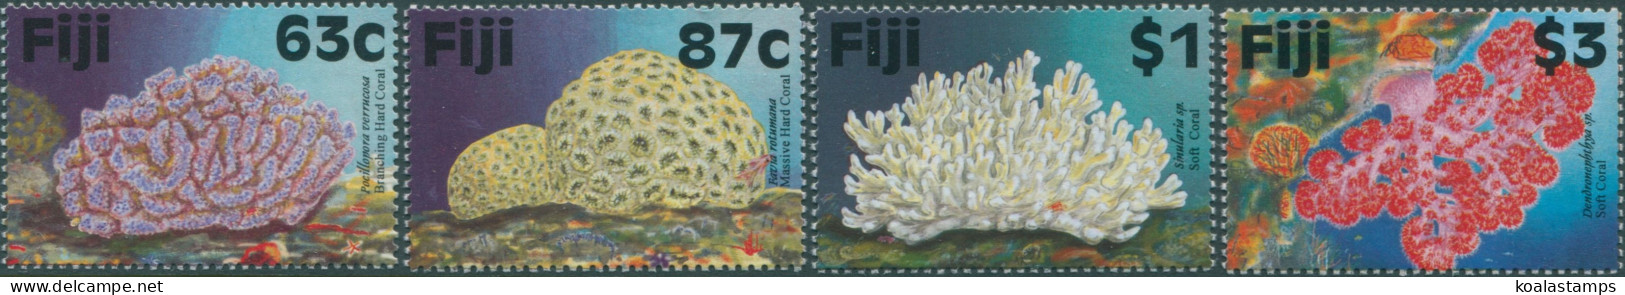 Fiji 1997 SG982-985 Coral Reef Set MNH - Fiji (1970-...)